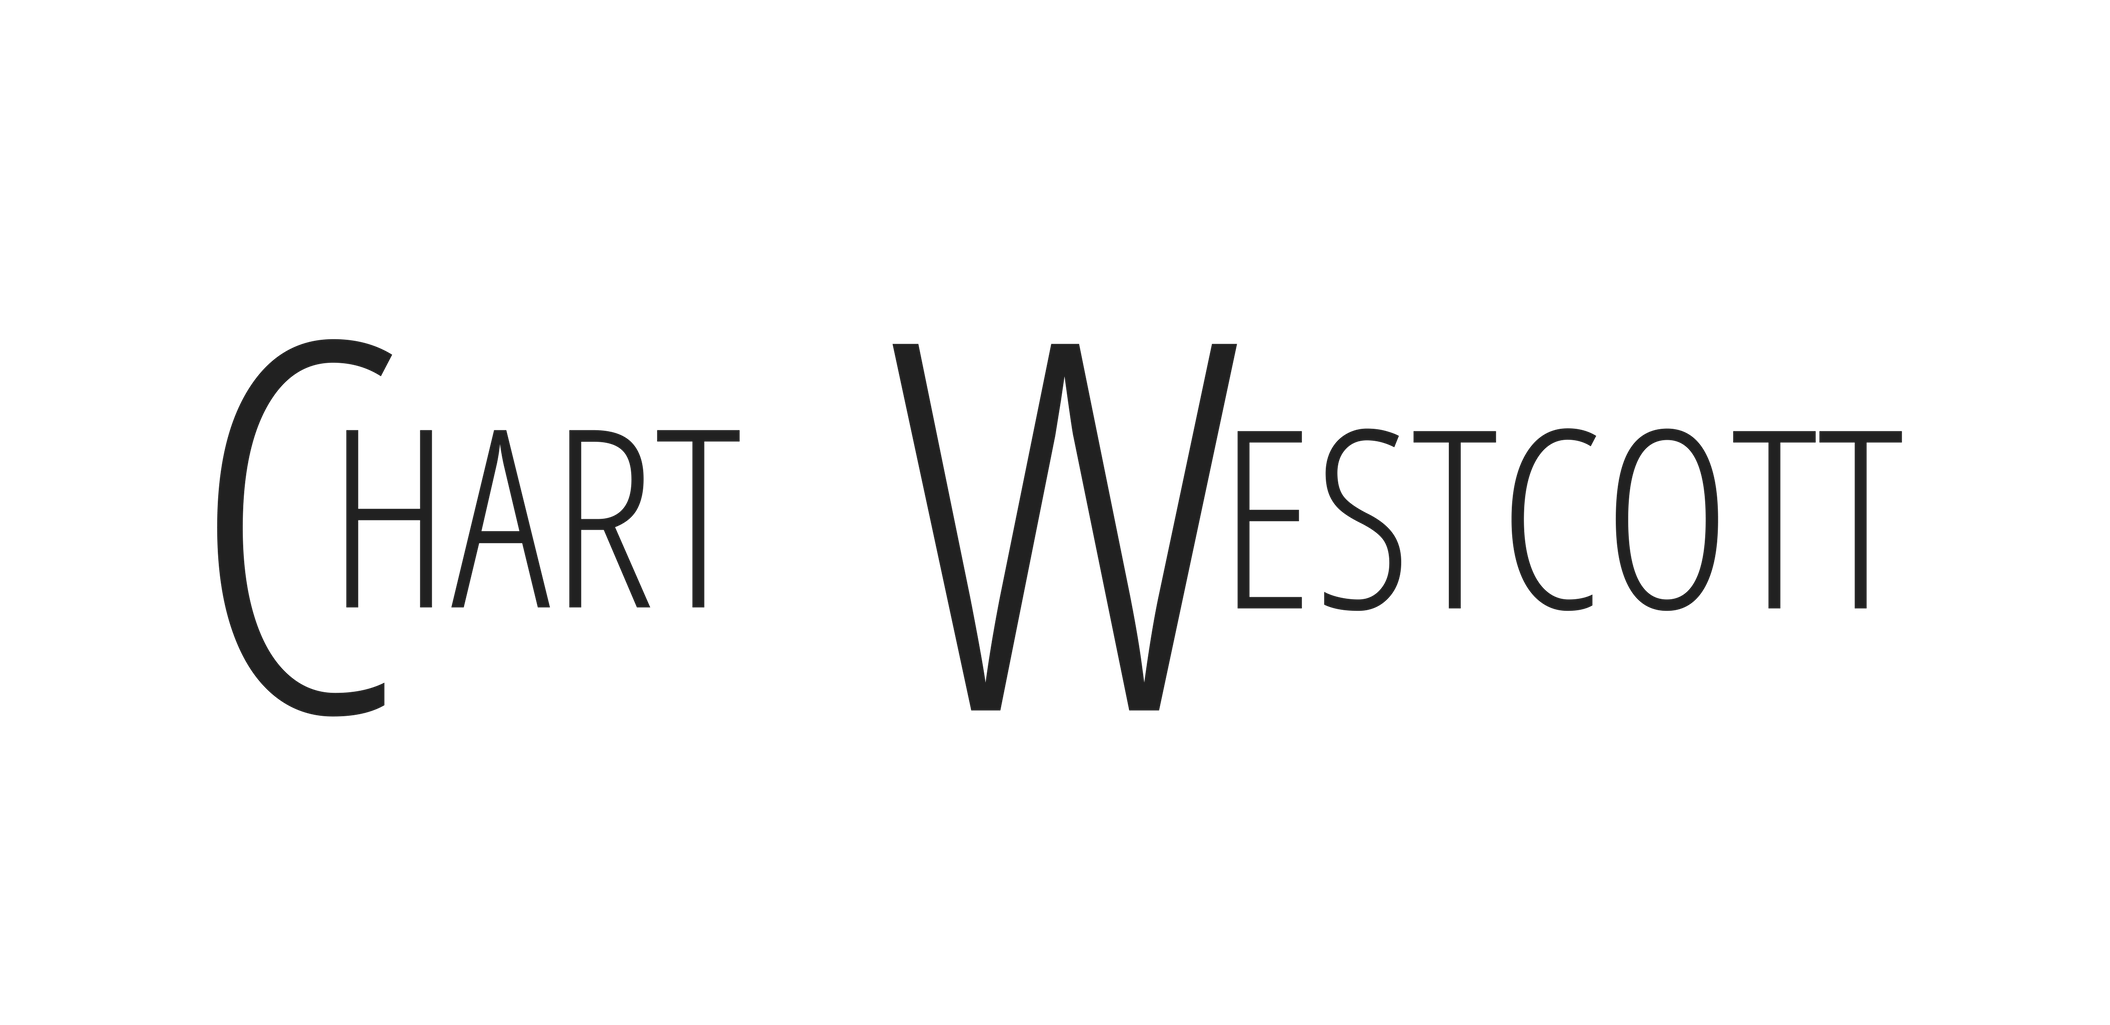 Chart Westcott Age